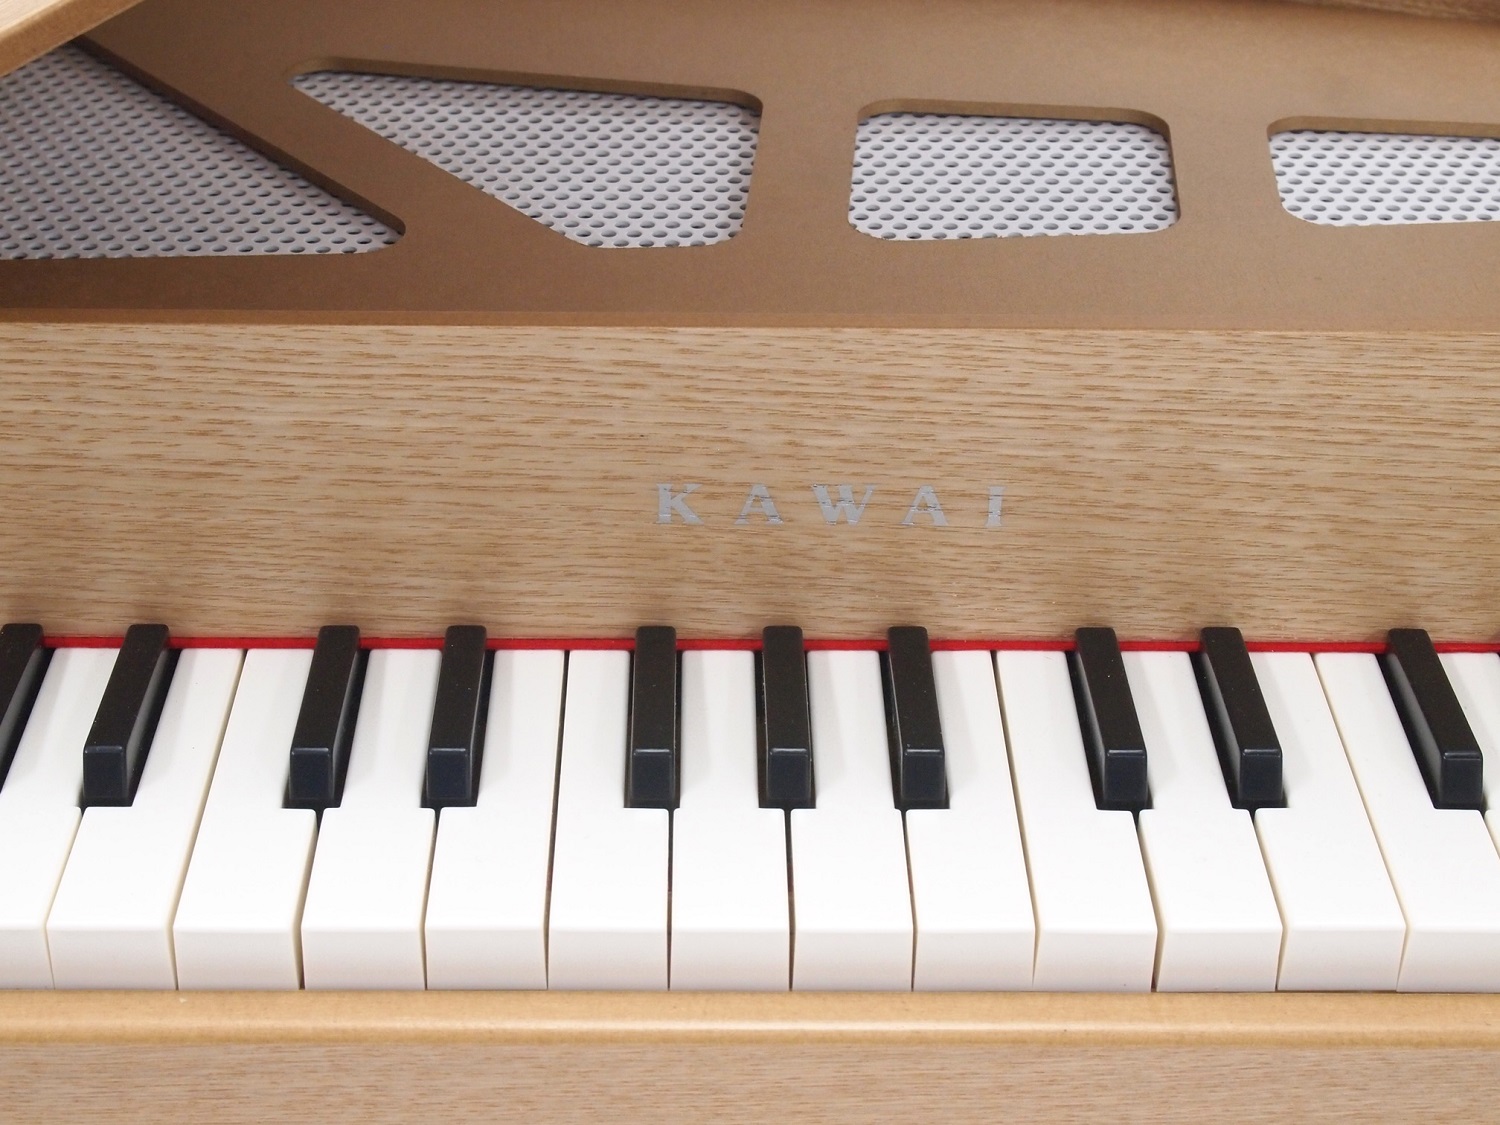 【楽天最安値に挑戦】 送料無料 KAWAI カワイ グランドピアノ ナチュラル 楽器 ピアノ ミニピアノ 知育玩具 木製 子供用 誕生日